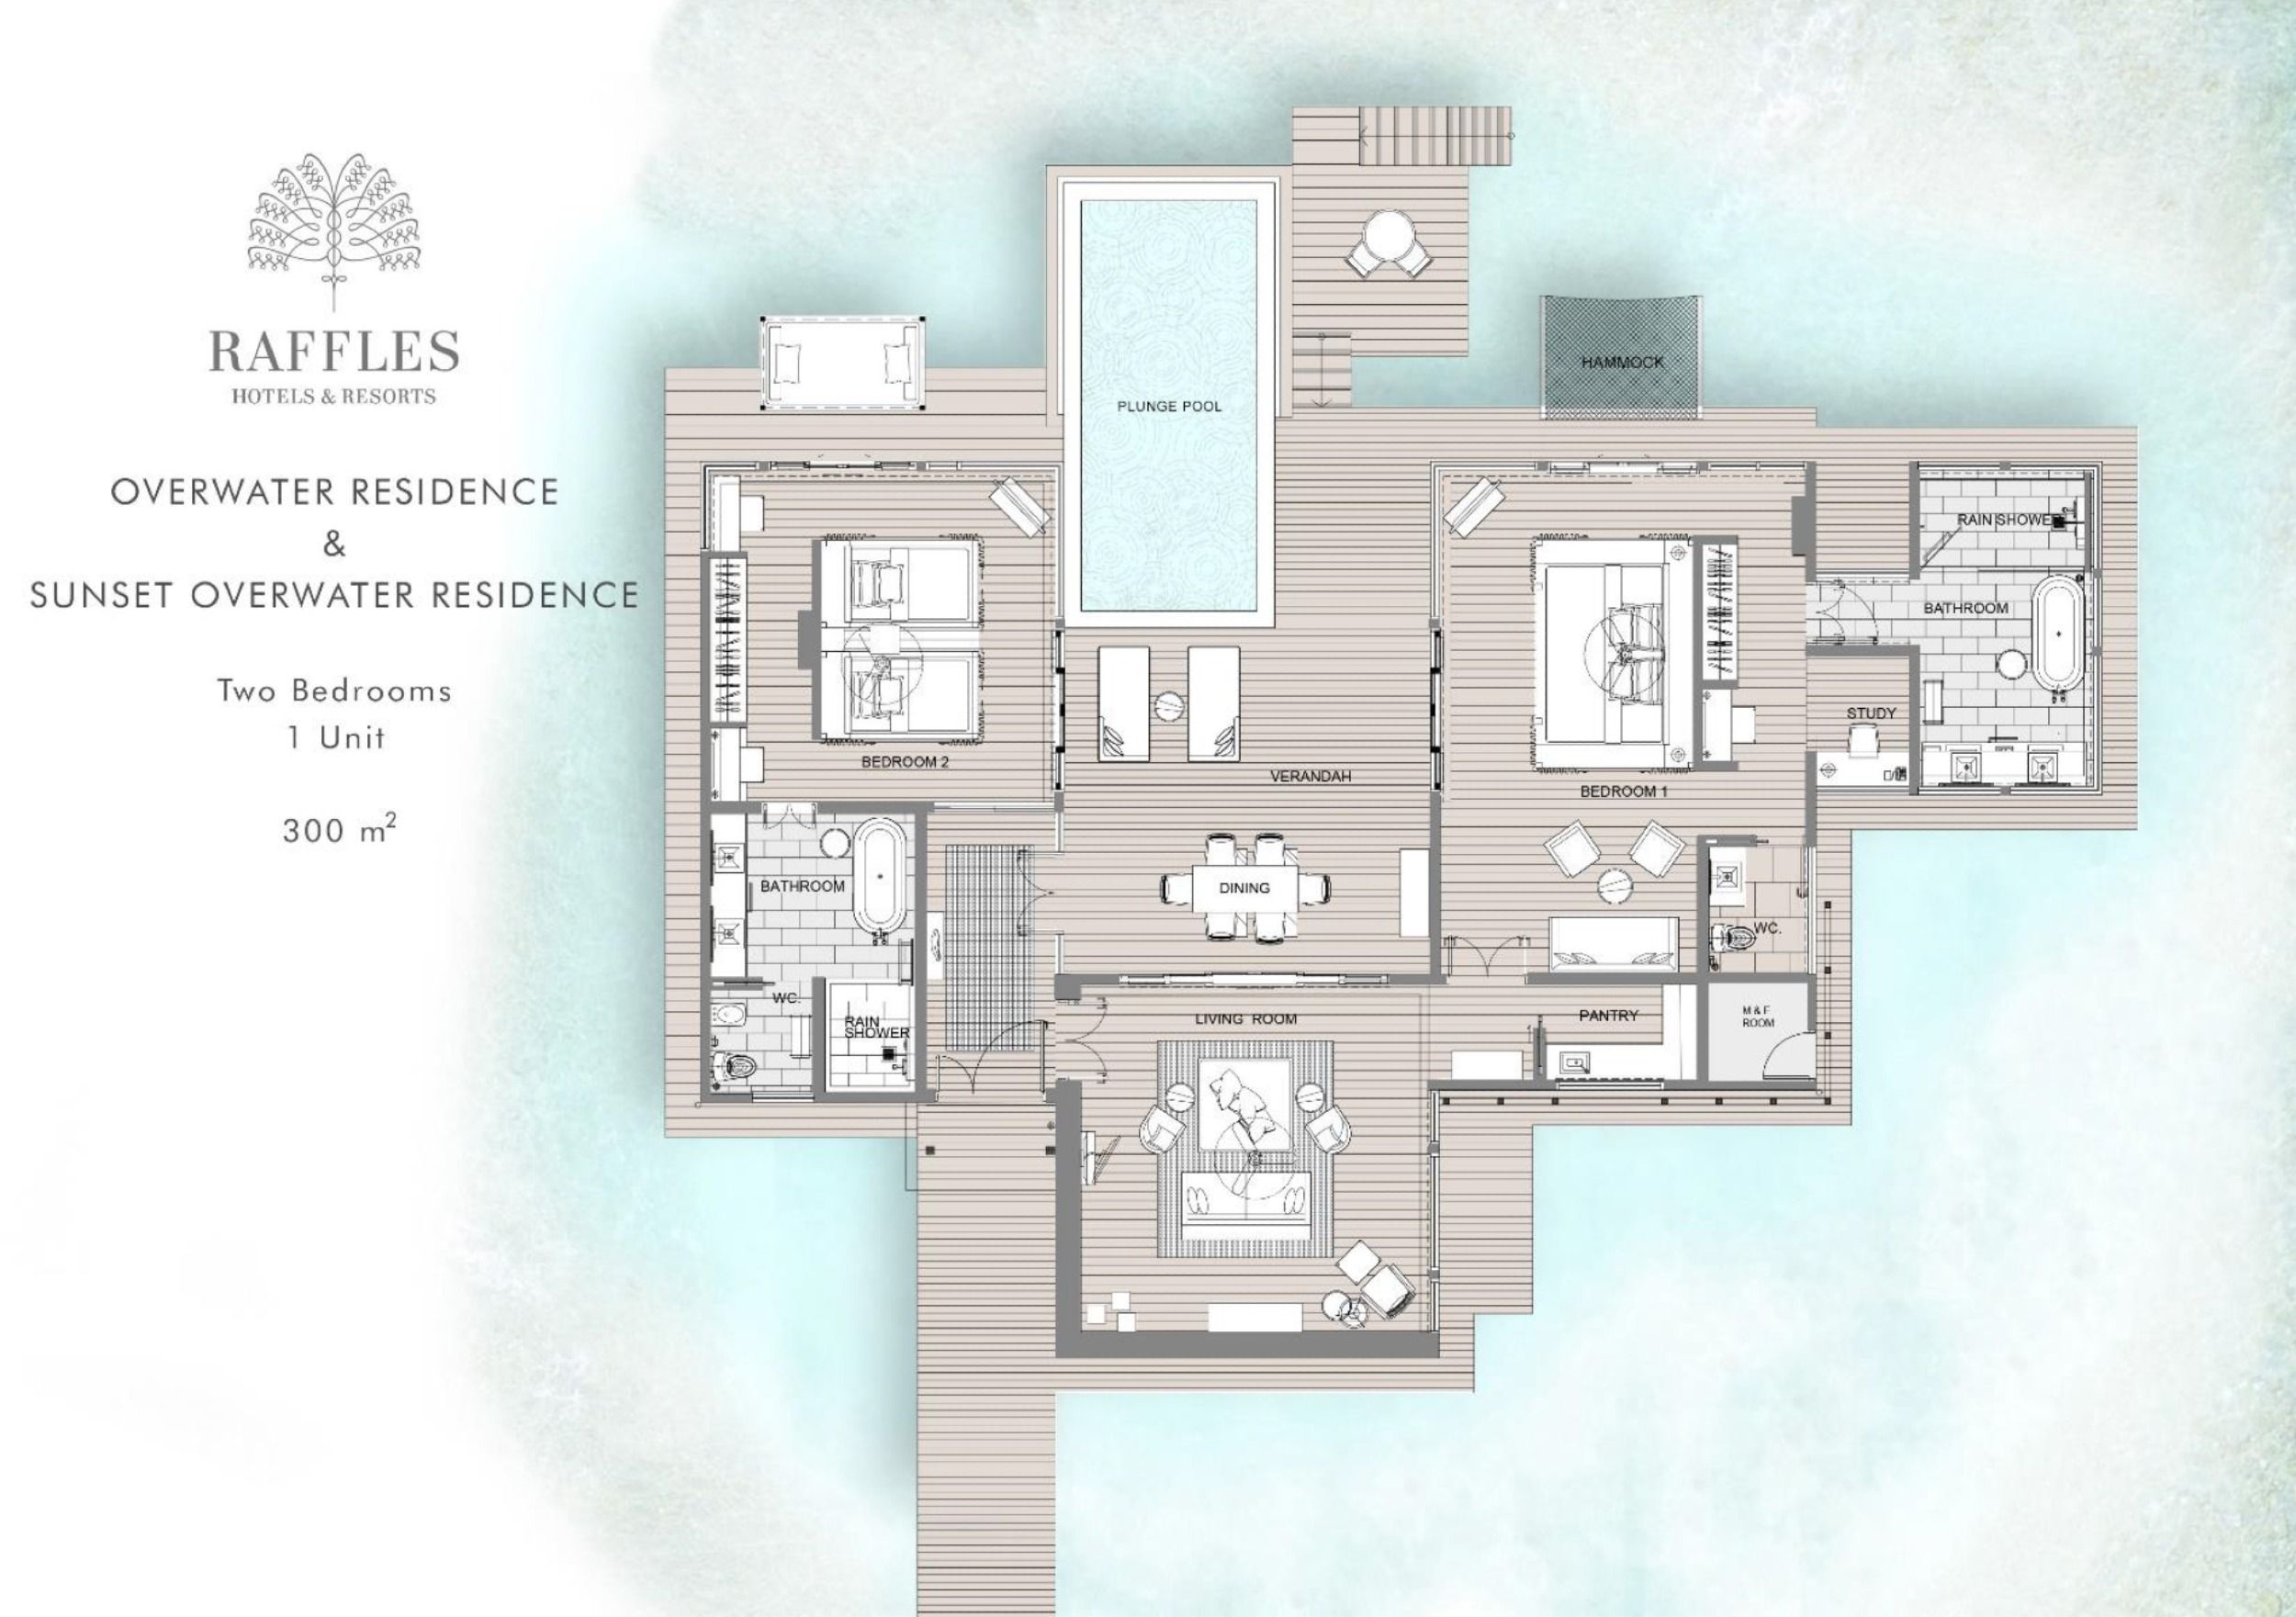 Raffles Maldives Overwater Residence with Pool Two Bedroom Floorplan